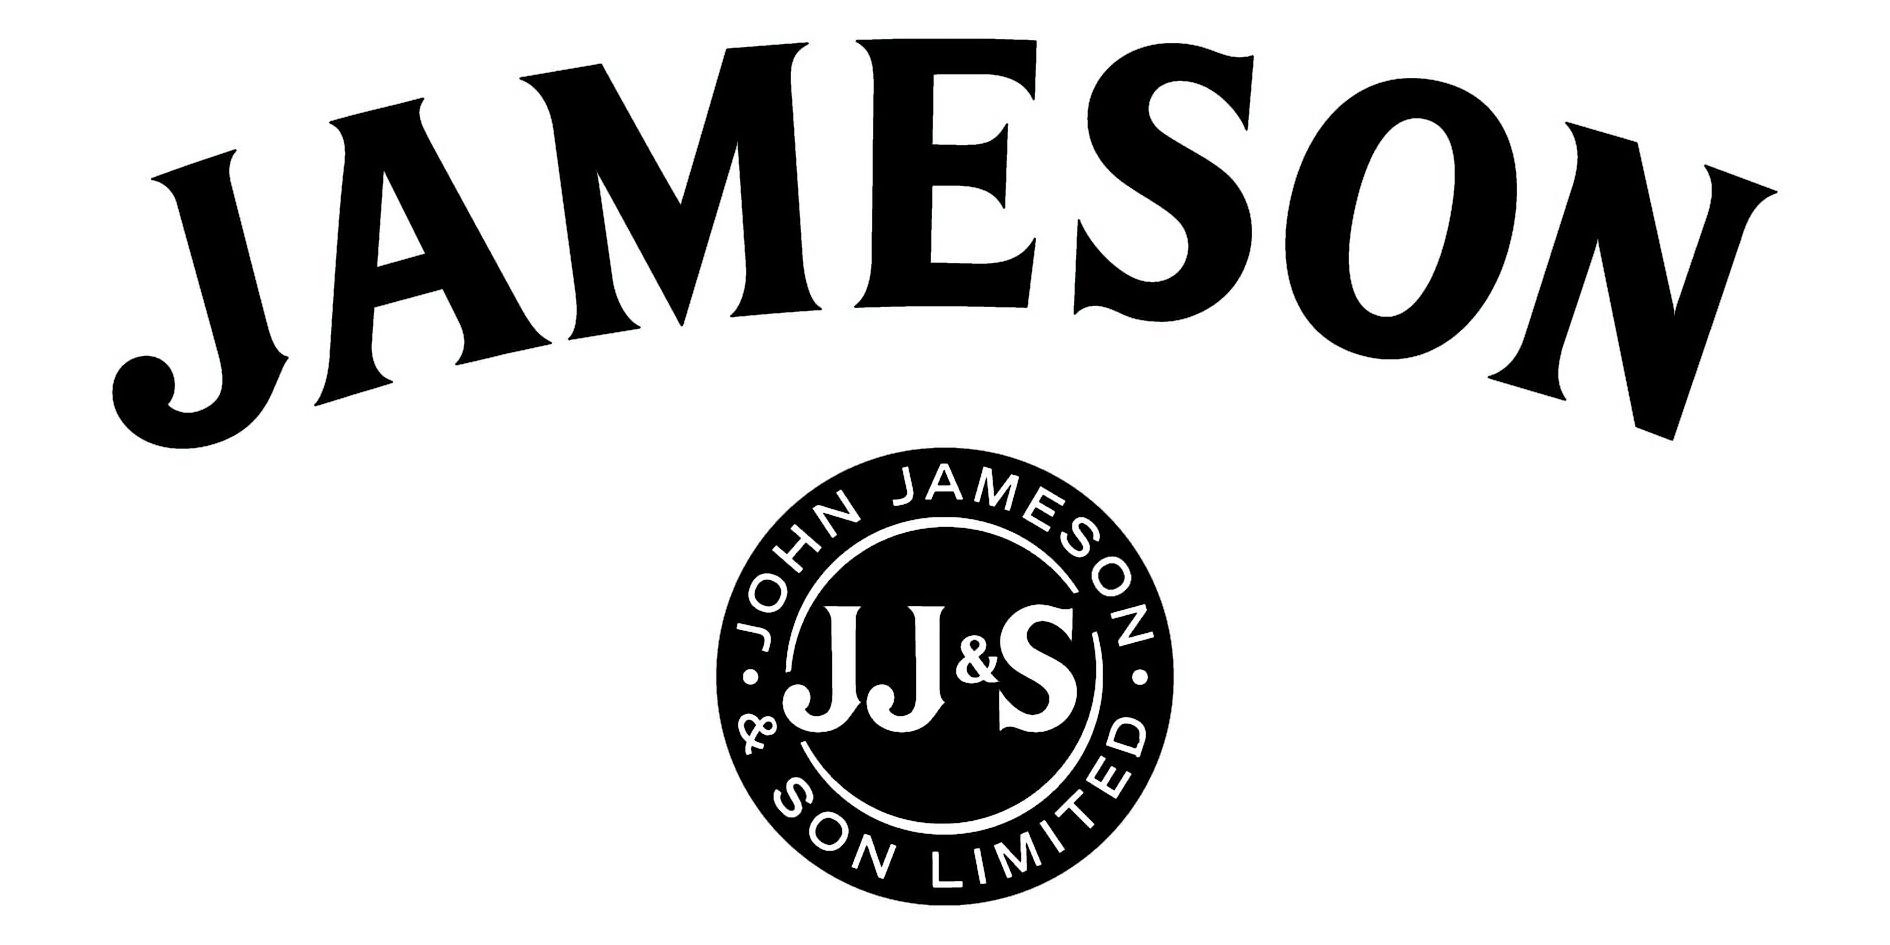  JAMESON JJ&amp;S JOHN JAMESON &amp; SON LIMITED